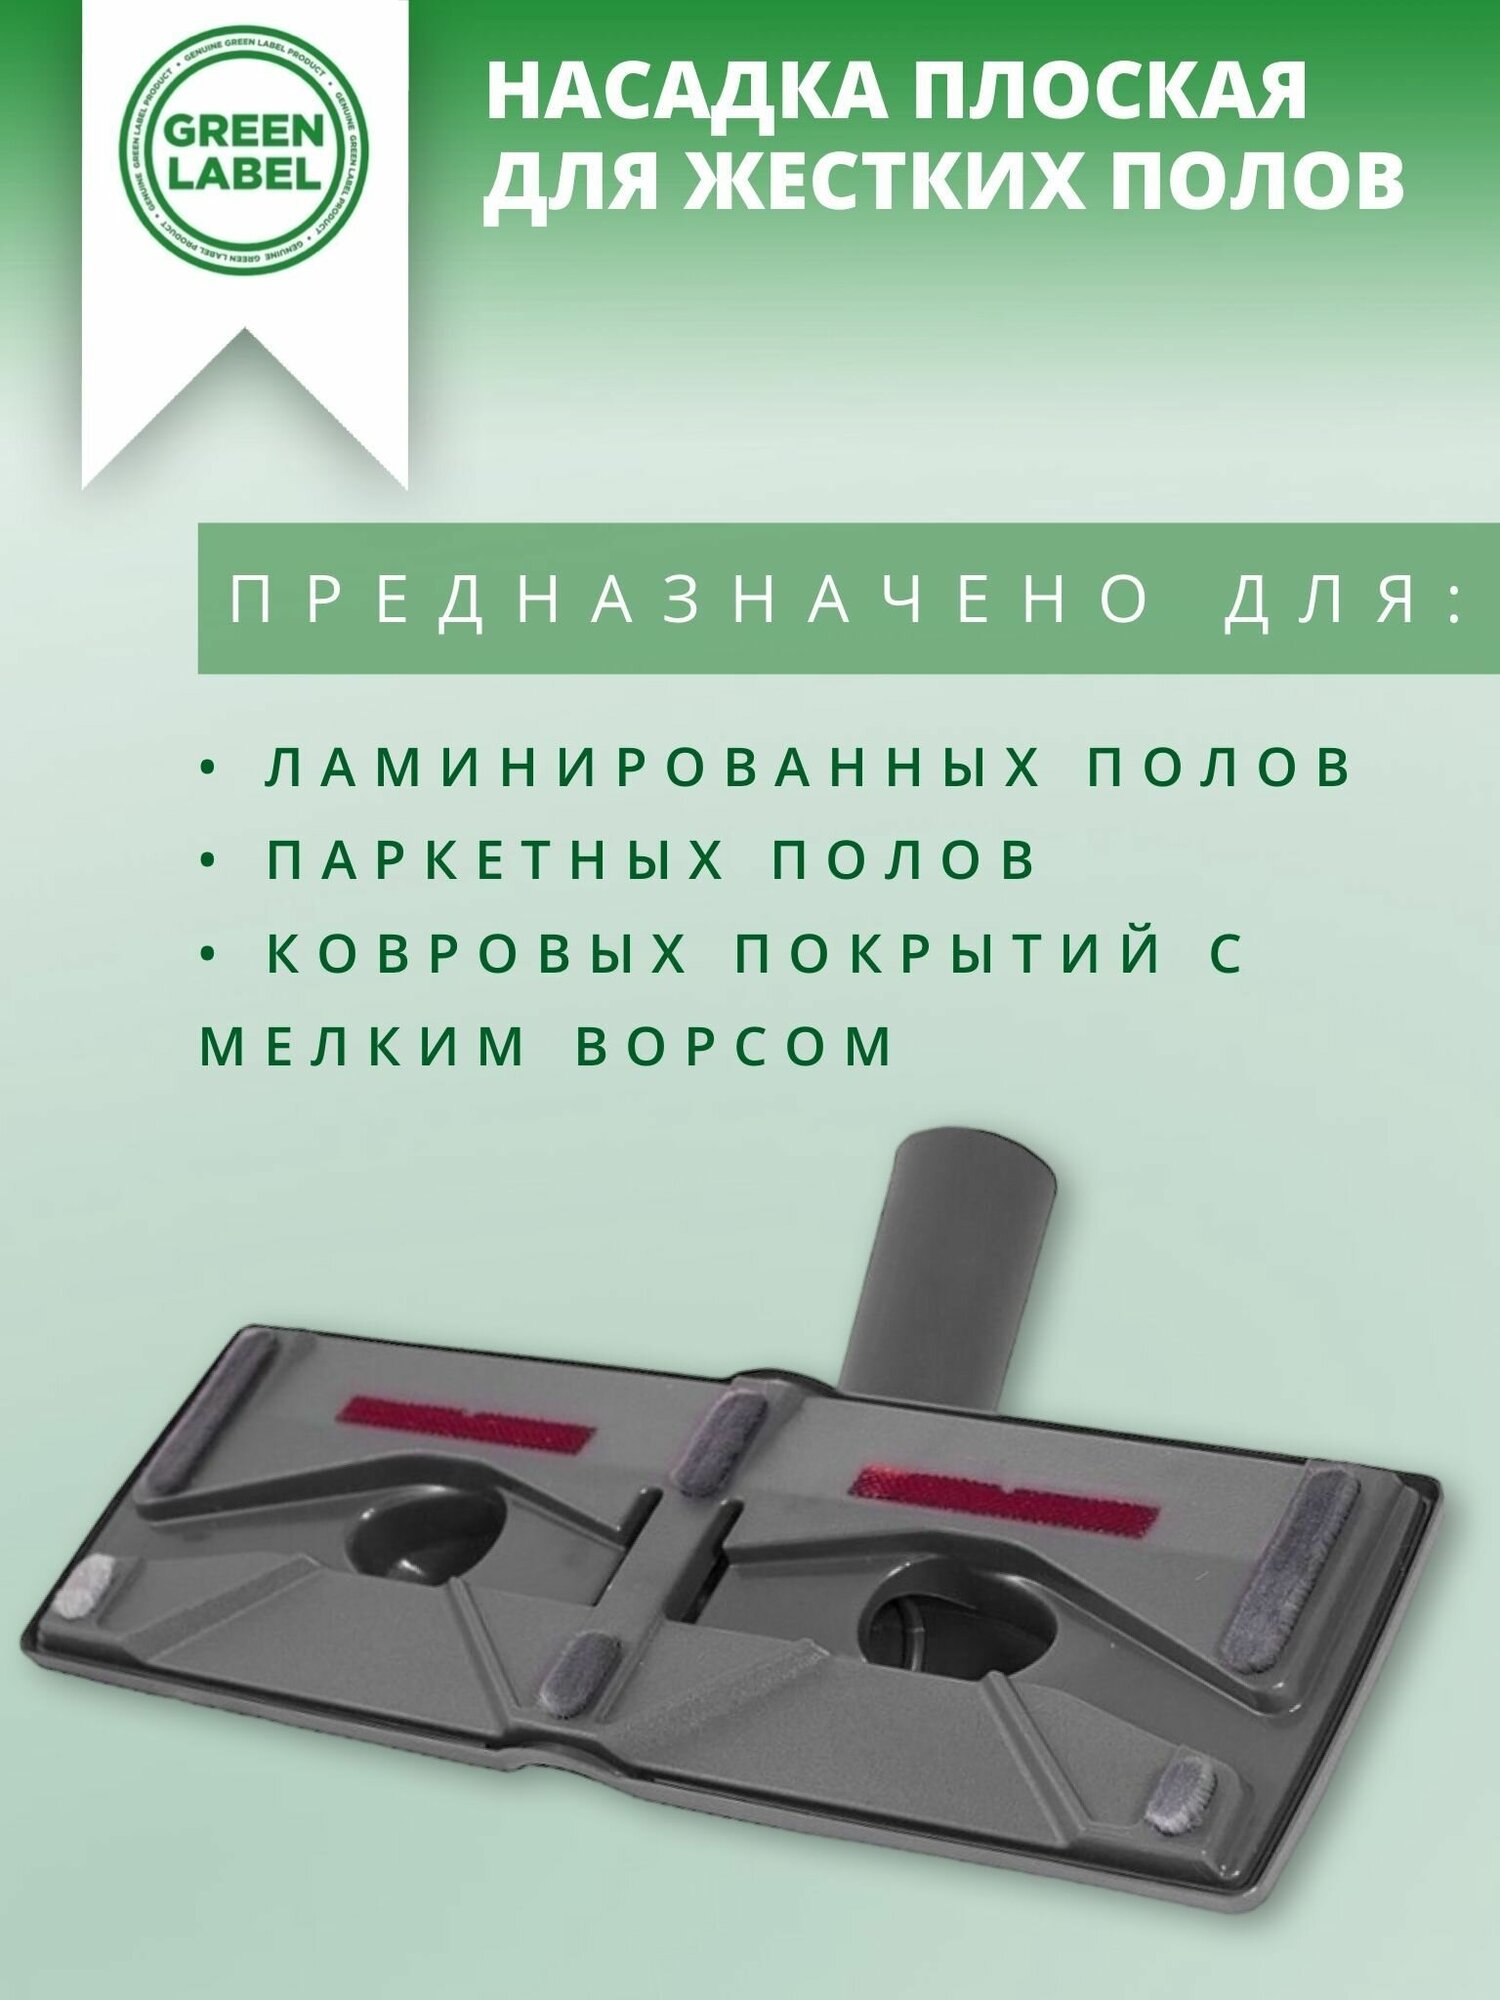 Green Label, Универсальная насадка плоская для жестких полов и ковровых покрытий, с диаметром трубки 30-35 мм